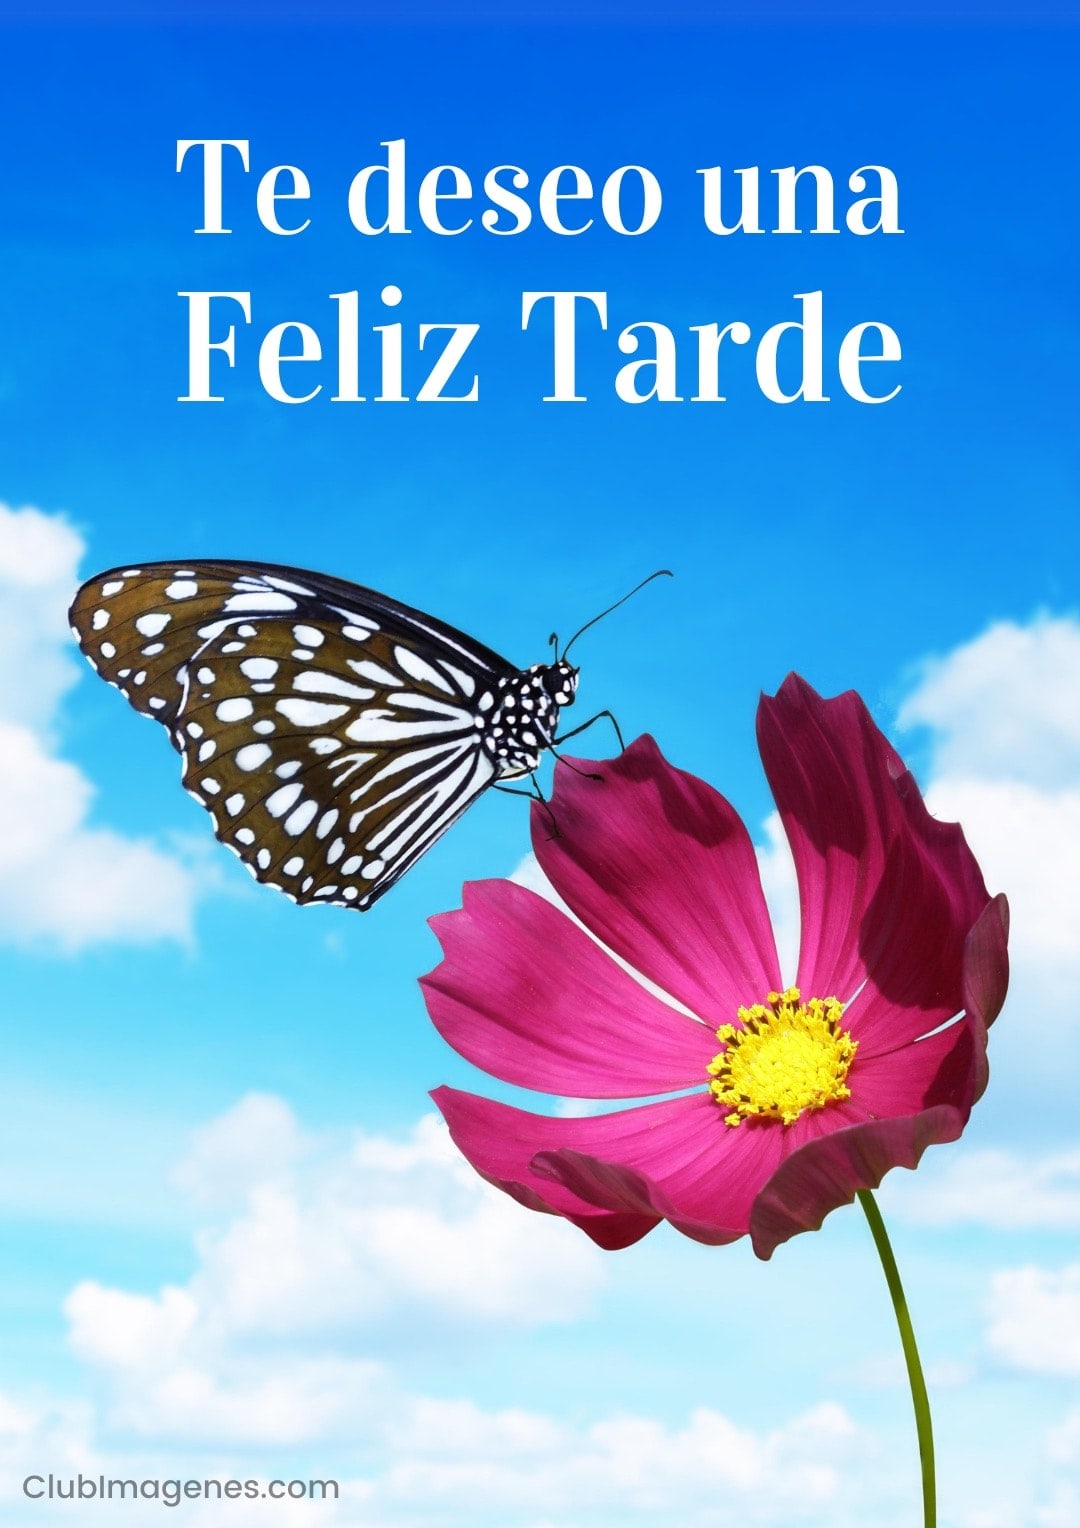 Mariposa posada sobre flor rosa bajo cielo azul, acompañada de un mensaje deseando una feliz tarde